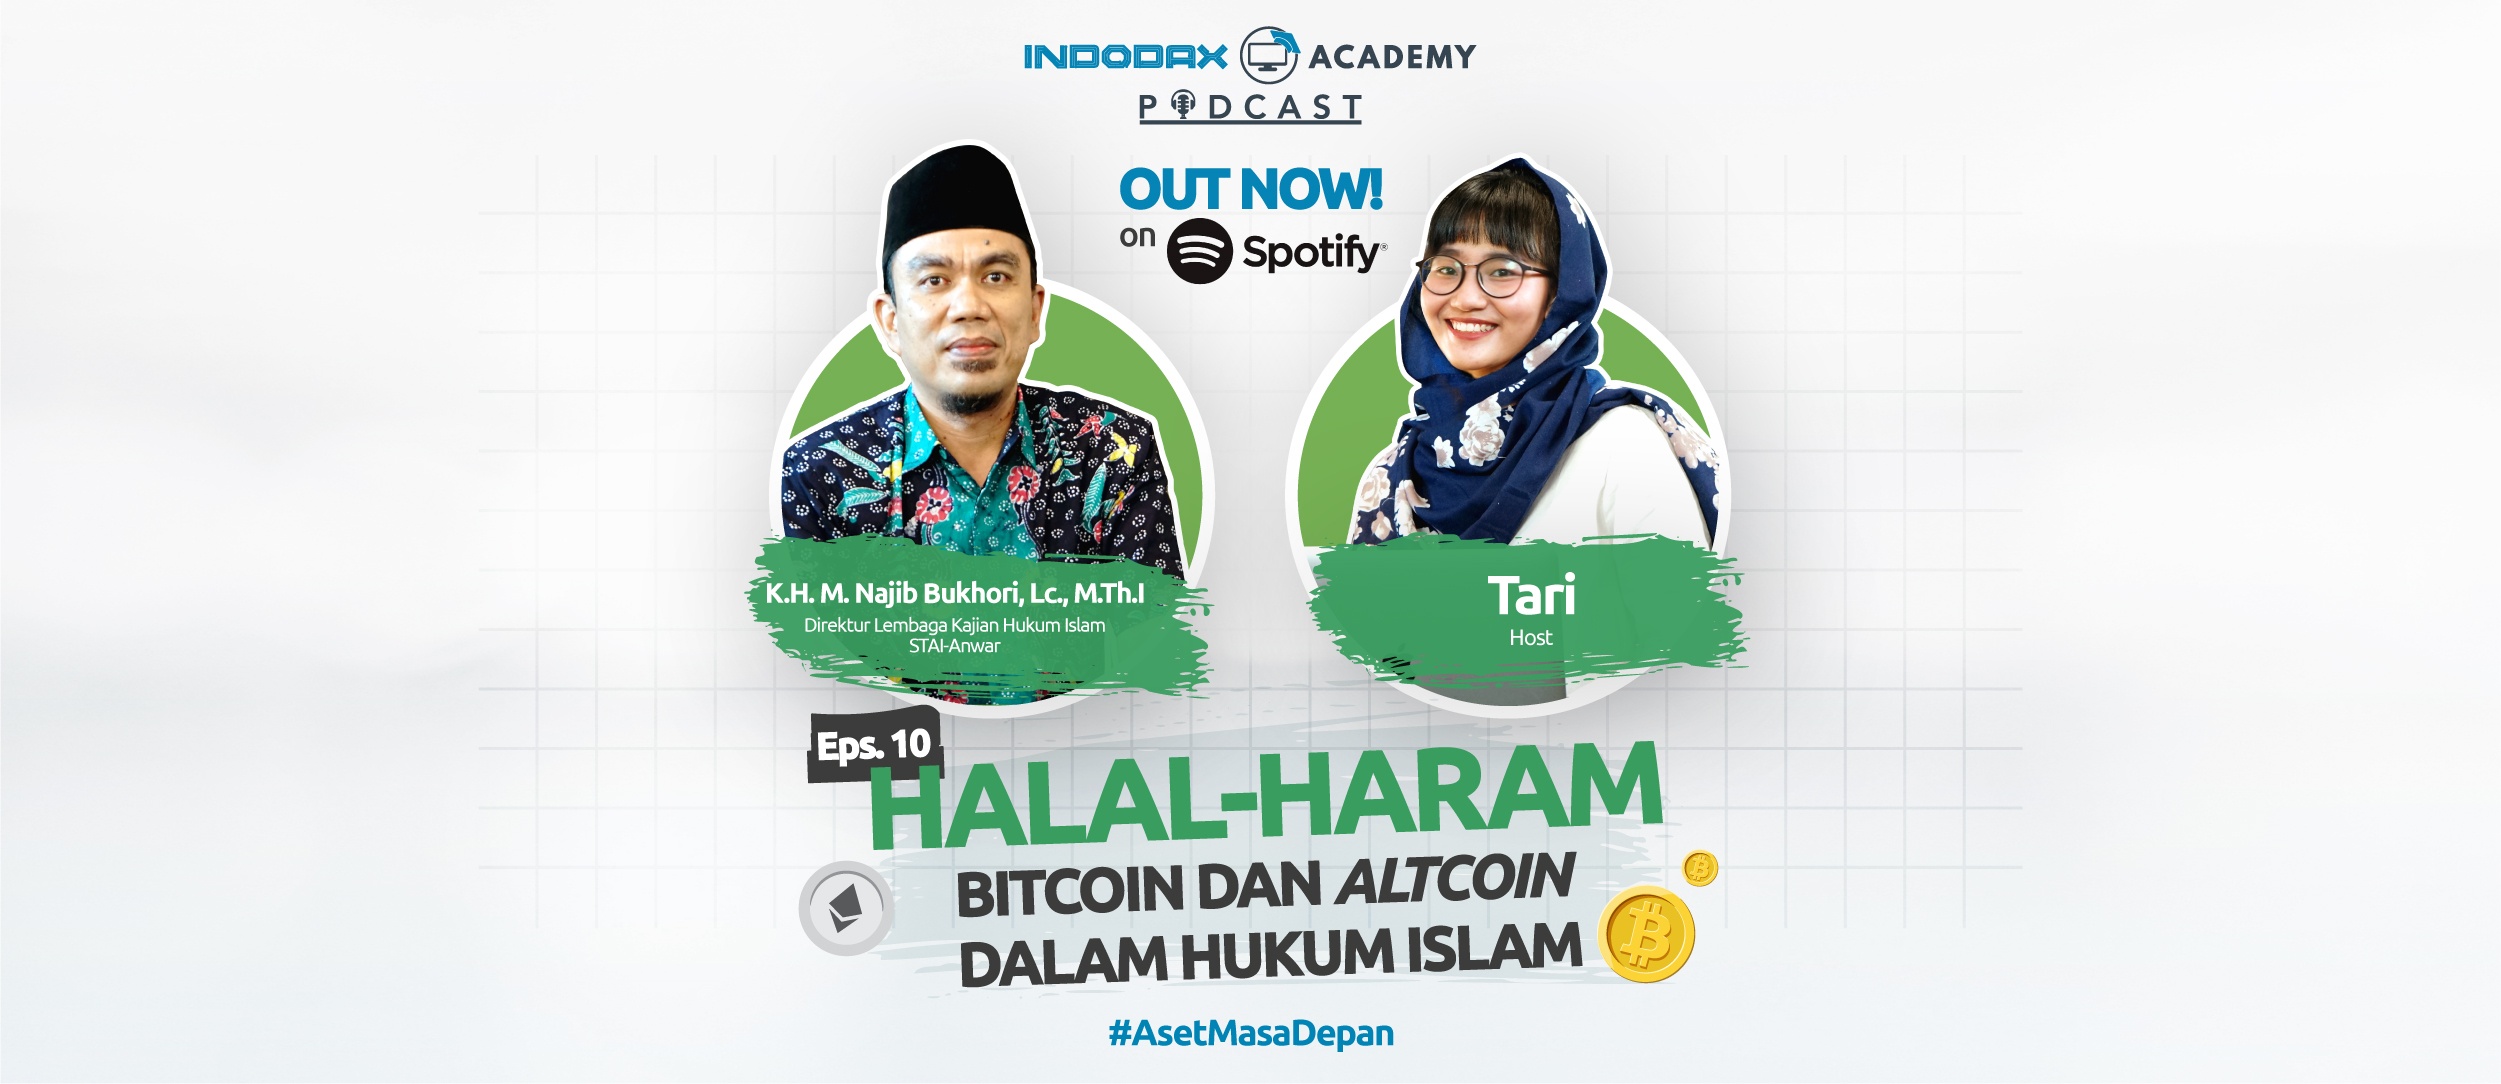 Indodax Academy Podcast: Halal-Haram Bitcoin Dan Altcoin Dalam Hukum Islam